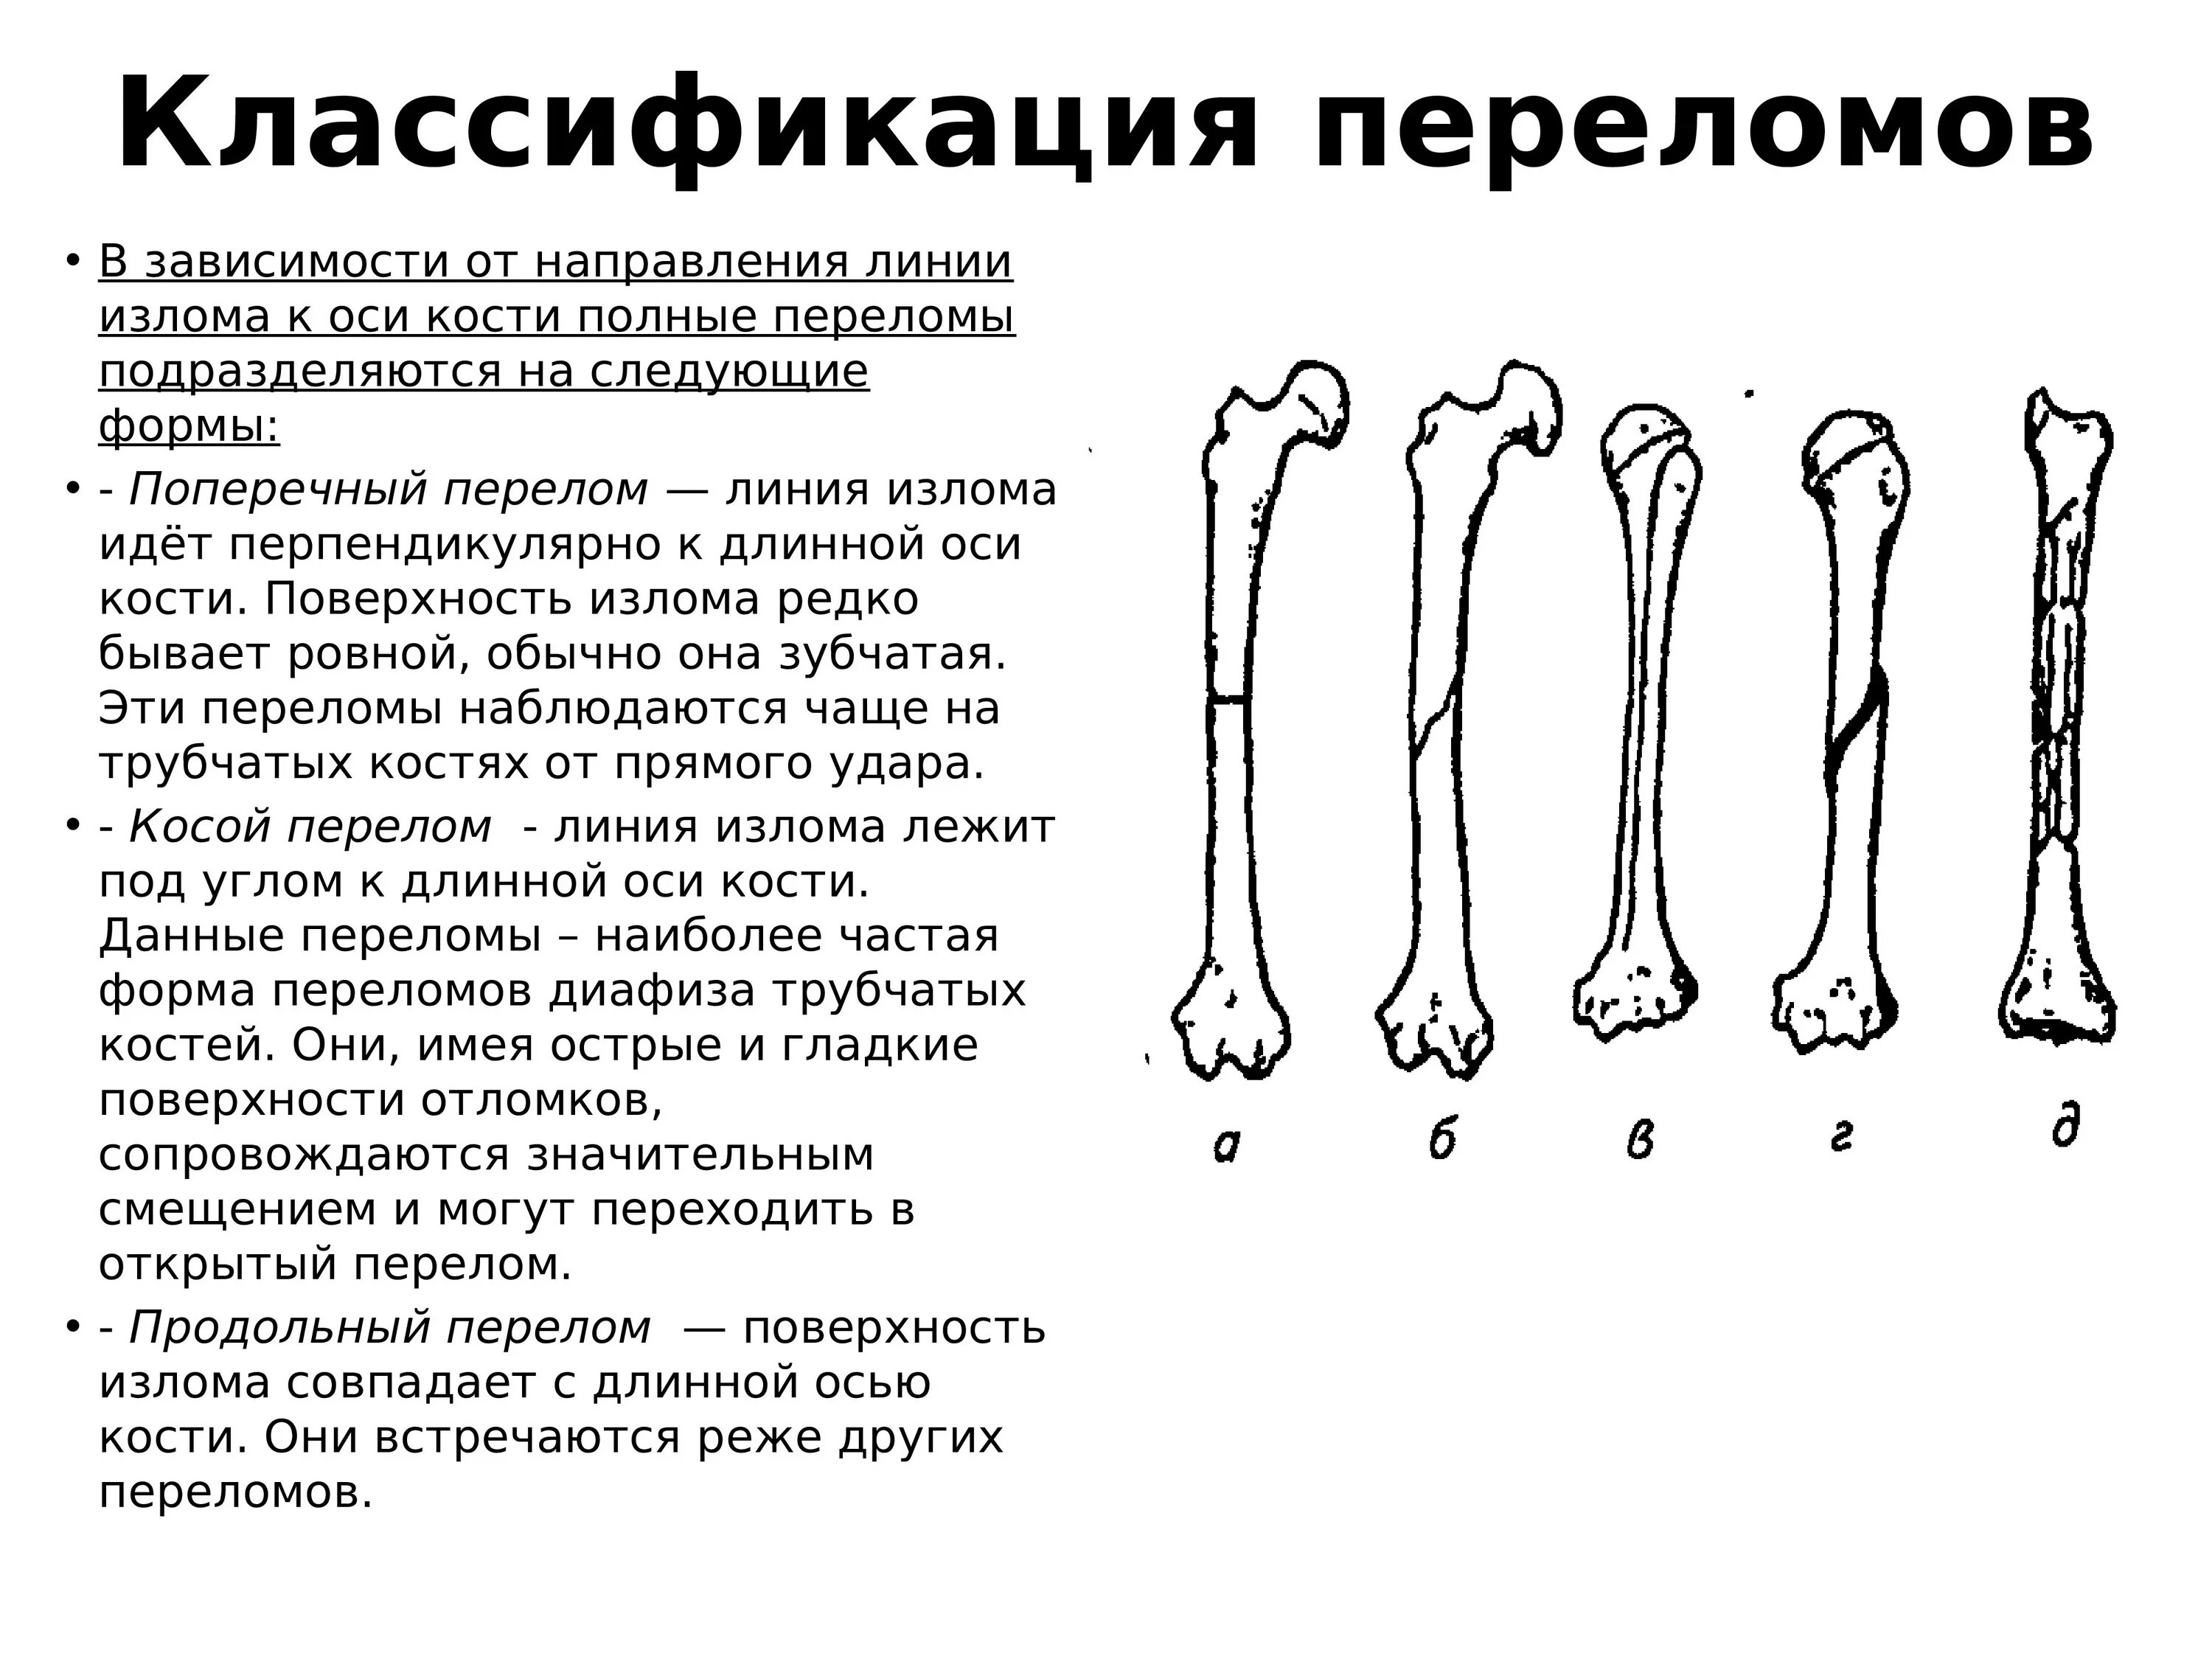 Перелом кости может быть каким. Переломы со смещением классификация. Виды переломов трубчатых костей по локализации. Перелом диафиза бедренной кости классификация. Виды переломов костей конечностей классификация.